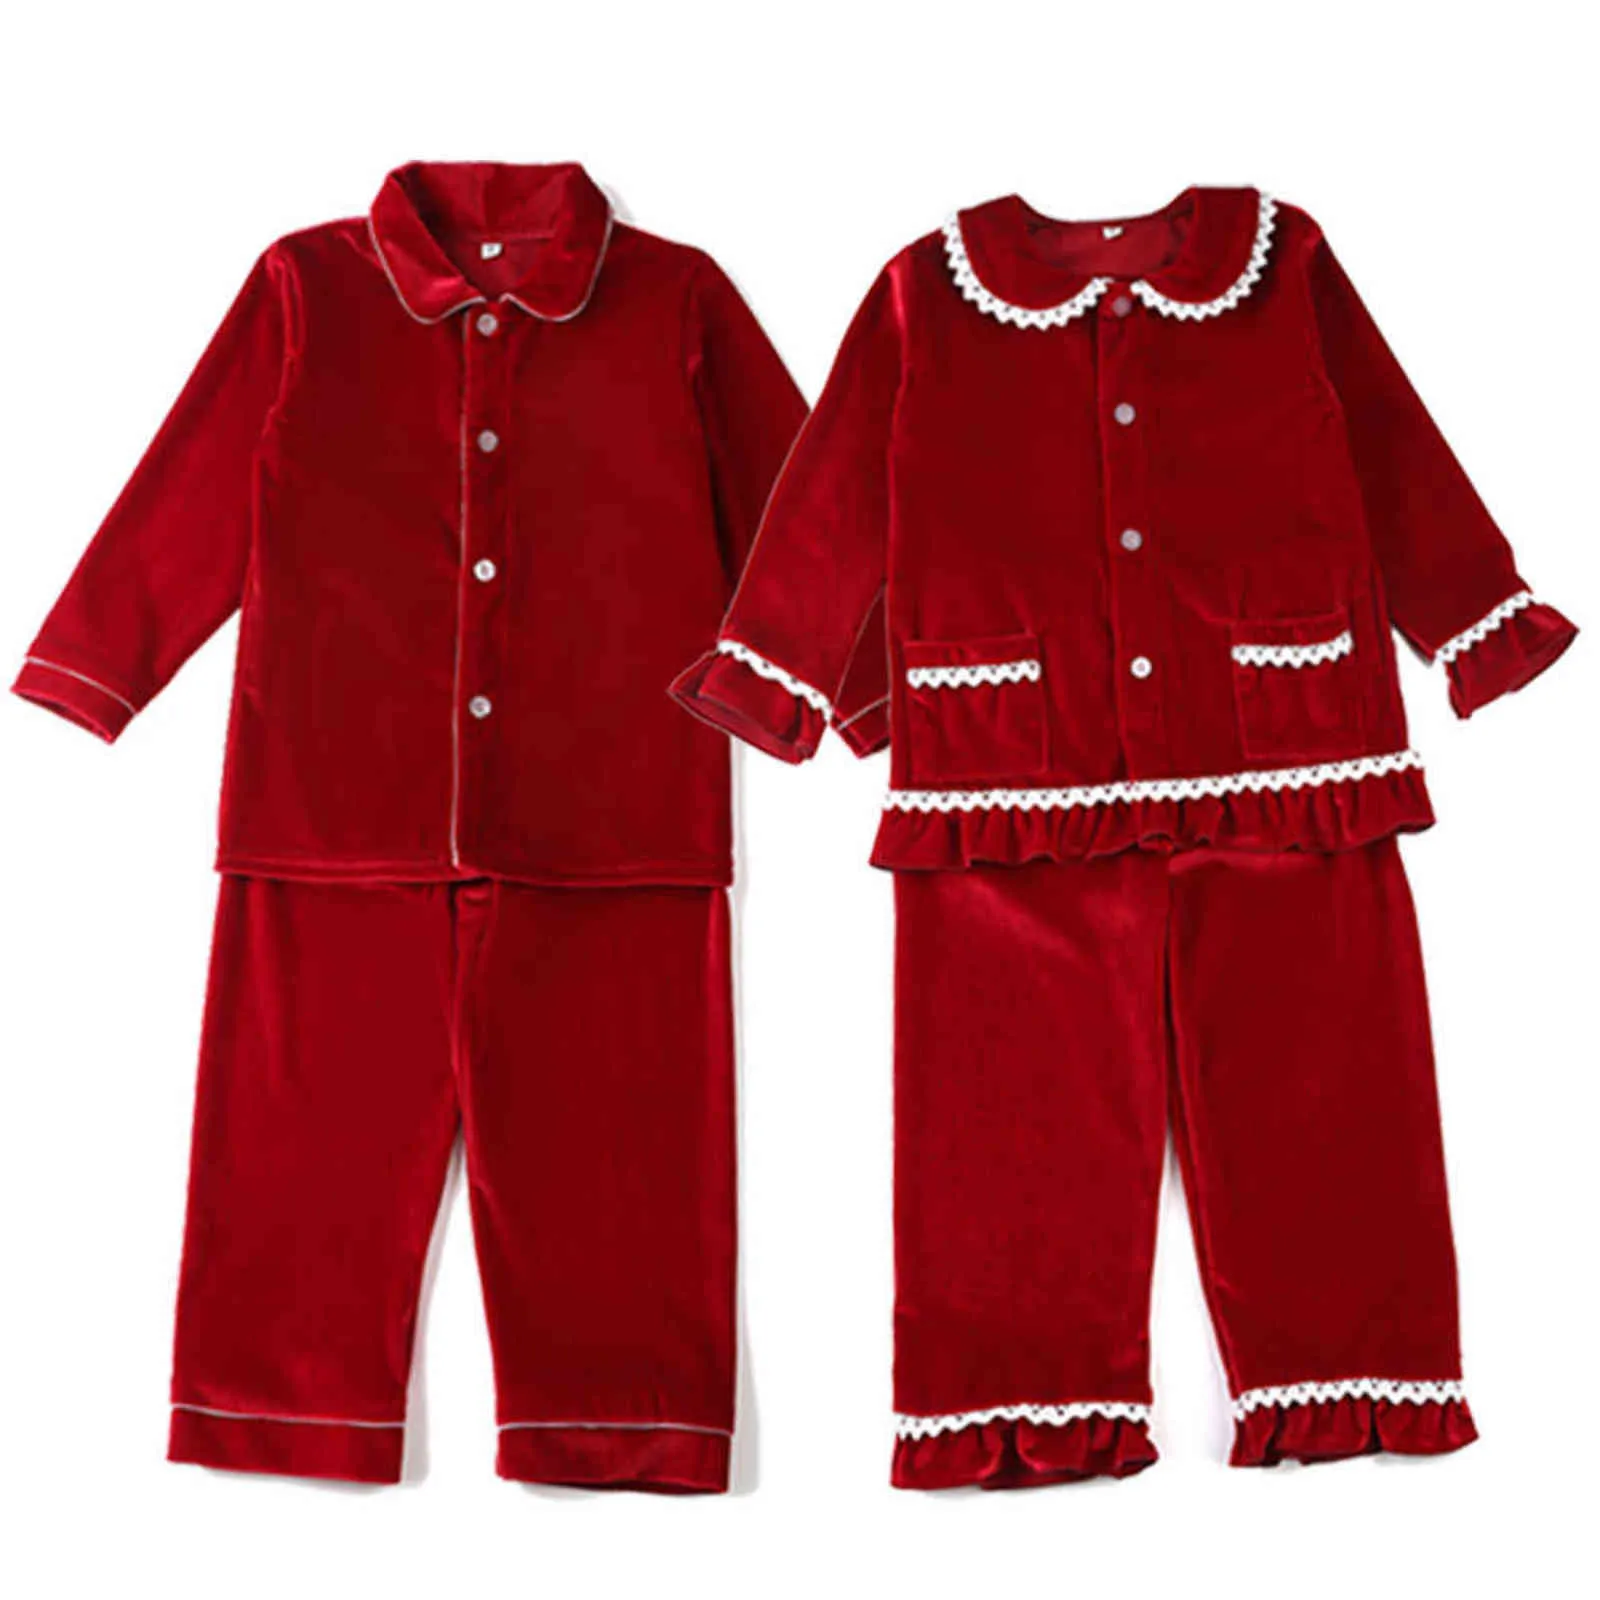 Boutique de inverno Tecido Velvet Tecido Redes de crianças vermelhas PJs com garotos para criança de renda Conjunto de pijamas menina bebê sono 2111028983668